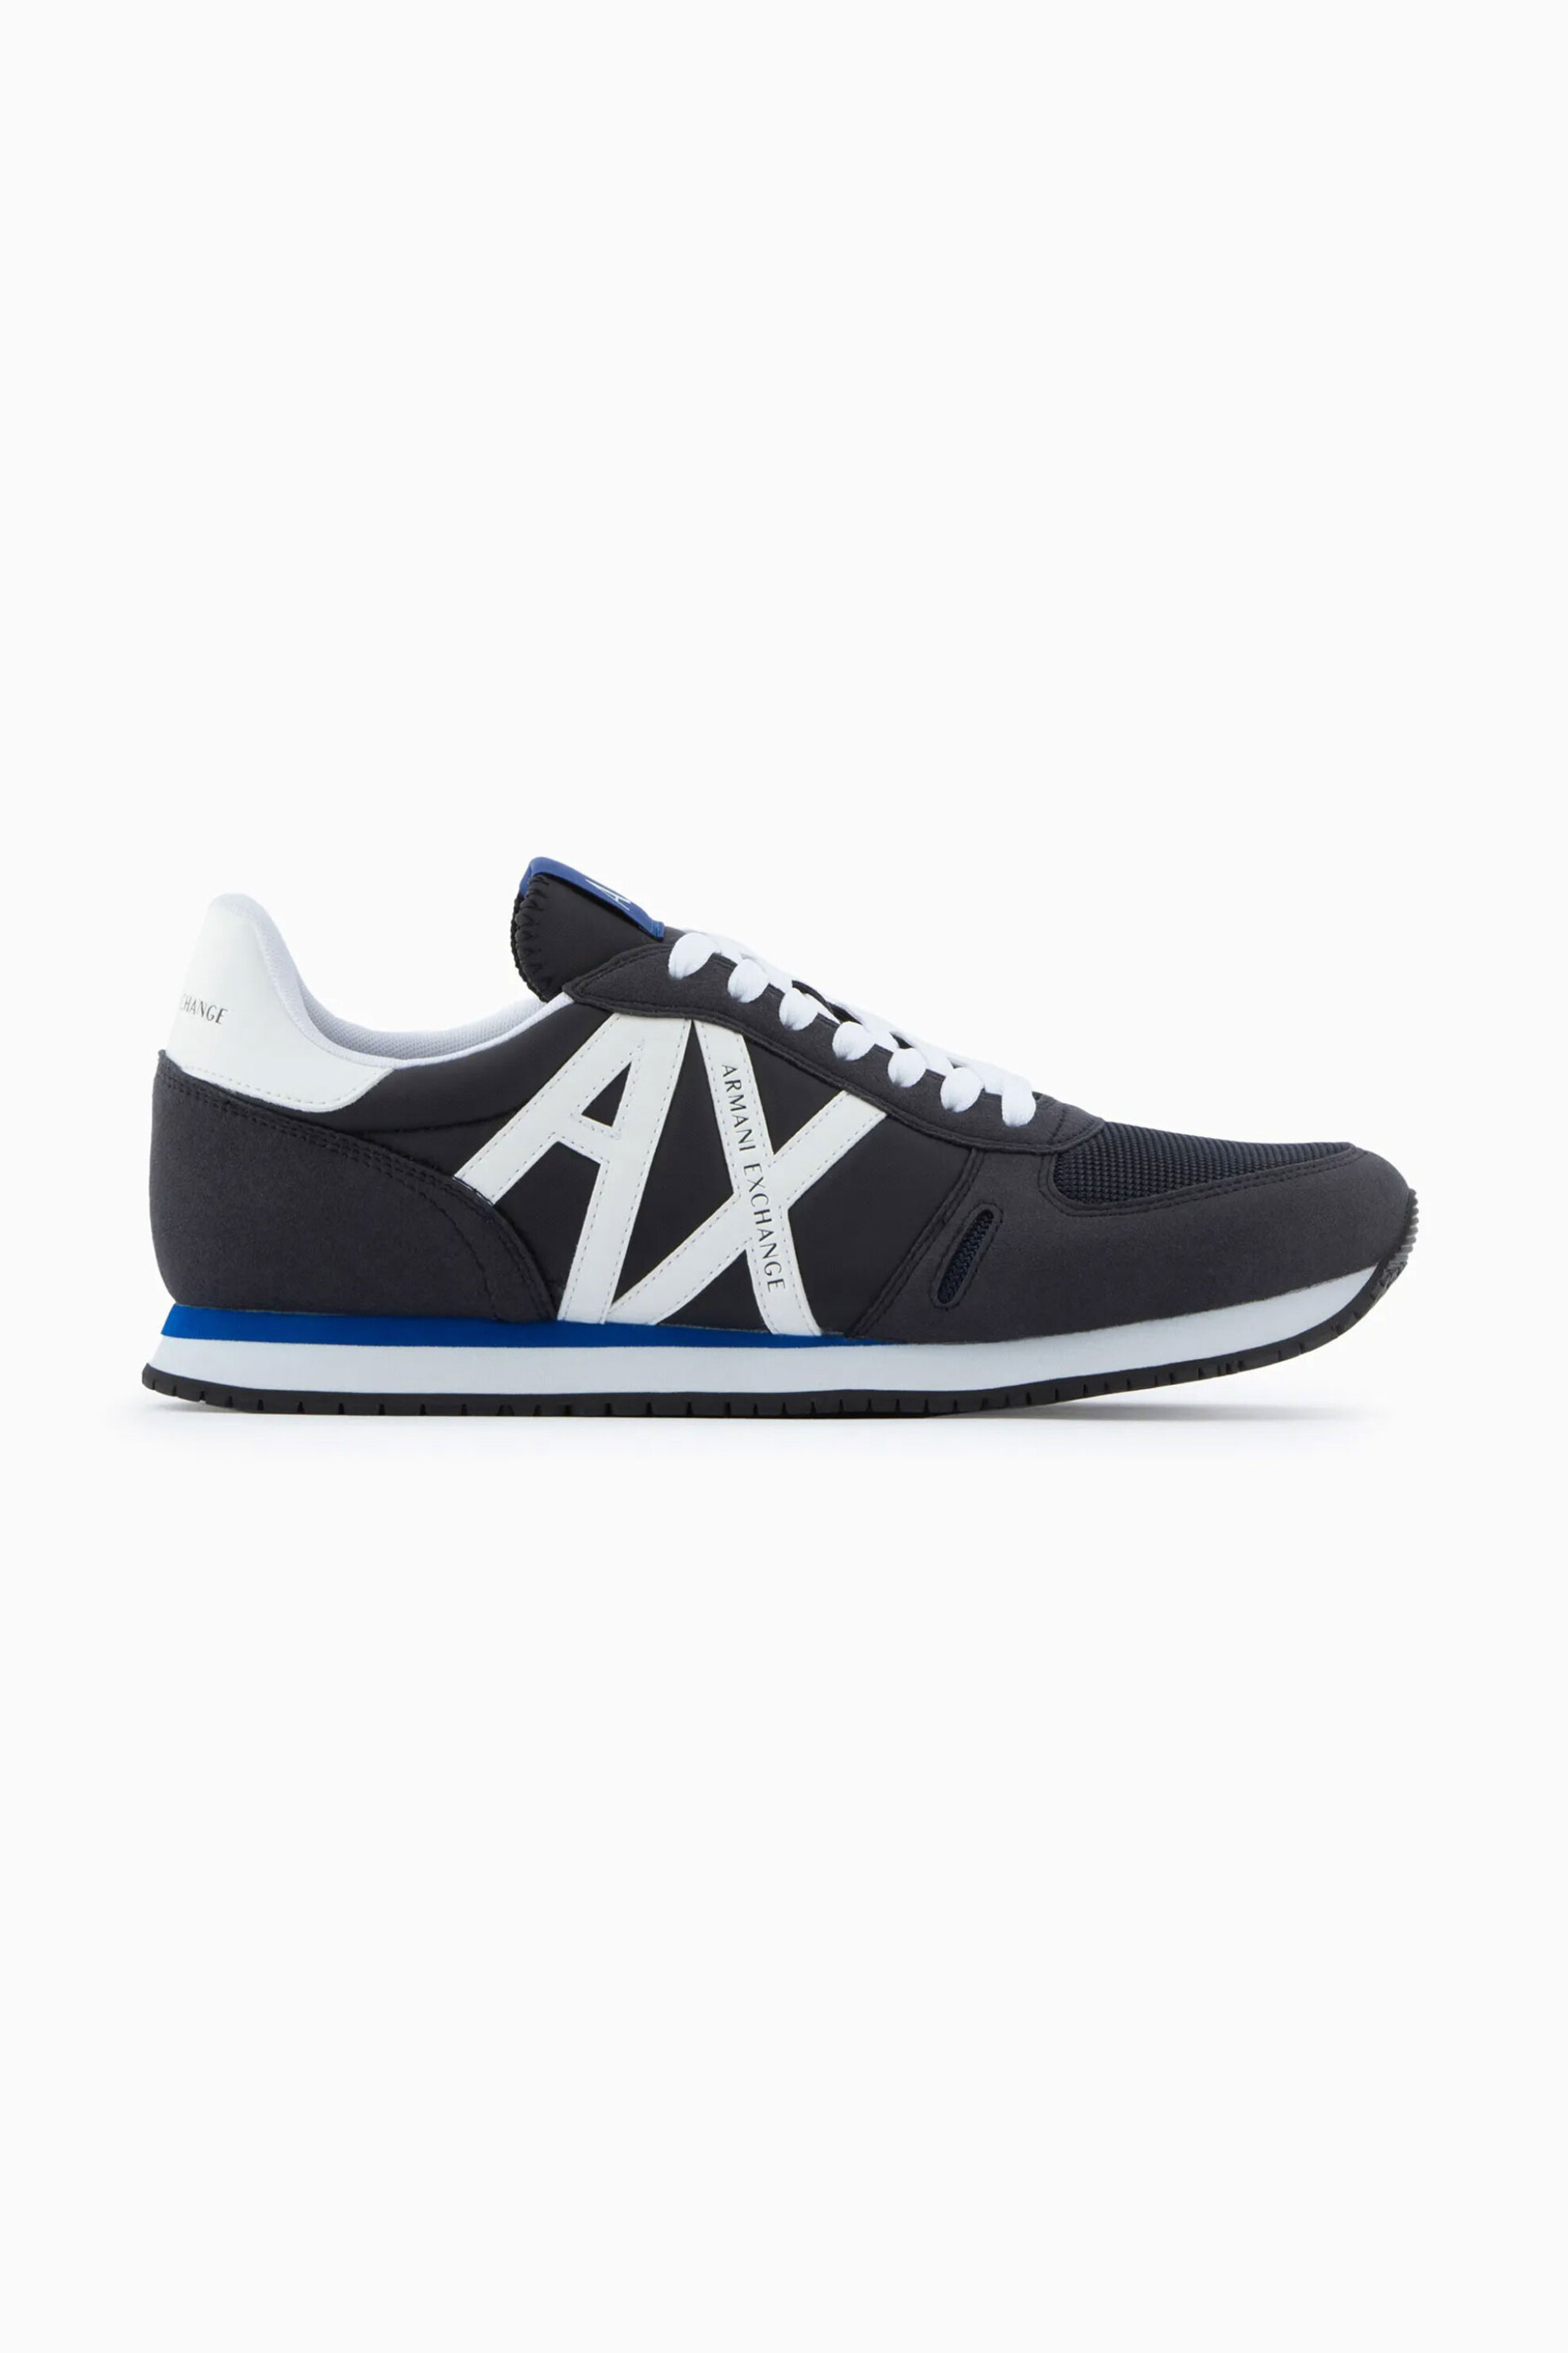 Ανδρική Μόδα > Ανδρικά Παπούτσια > Ανδρικά Sneakers Armani Exchange ανδρικά sneakers με suede όψη με λογότυπο στο πλάι - XUX017XCC68 Μπλε Σκούρο